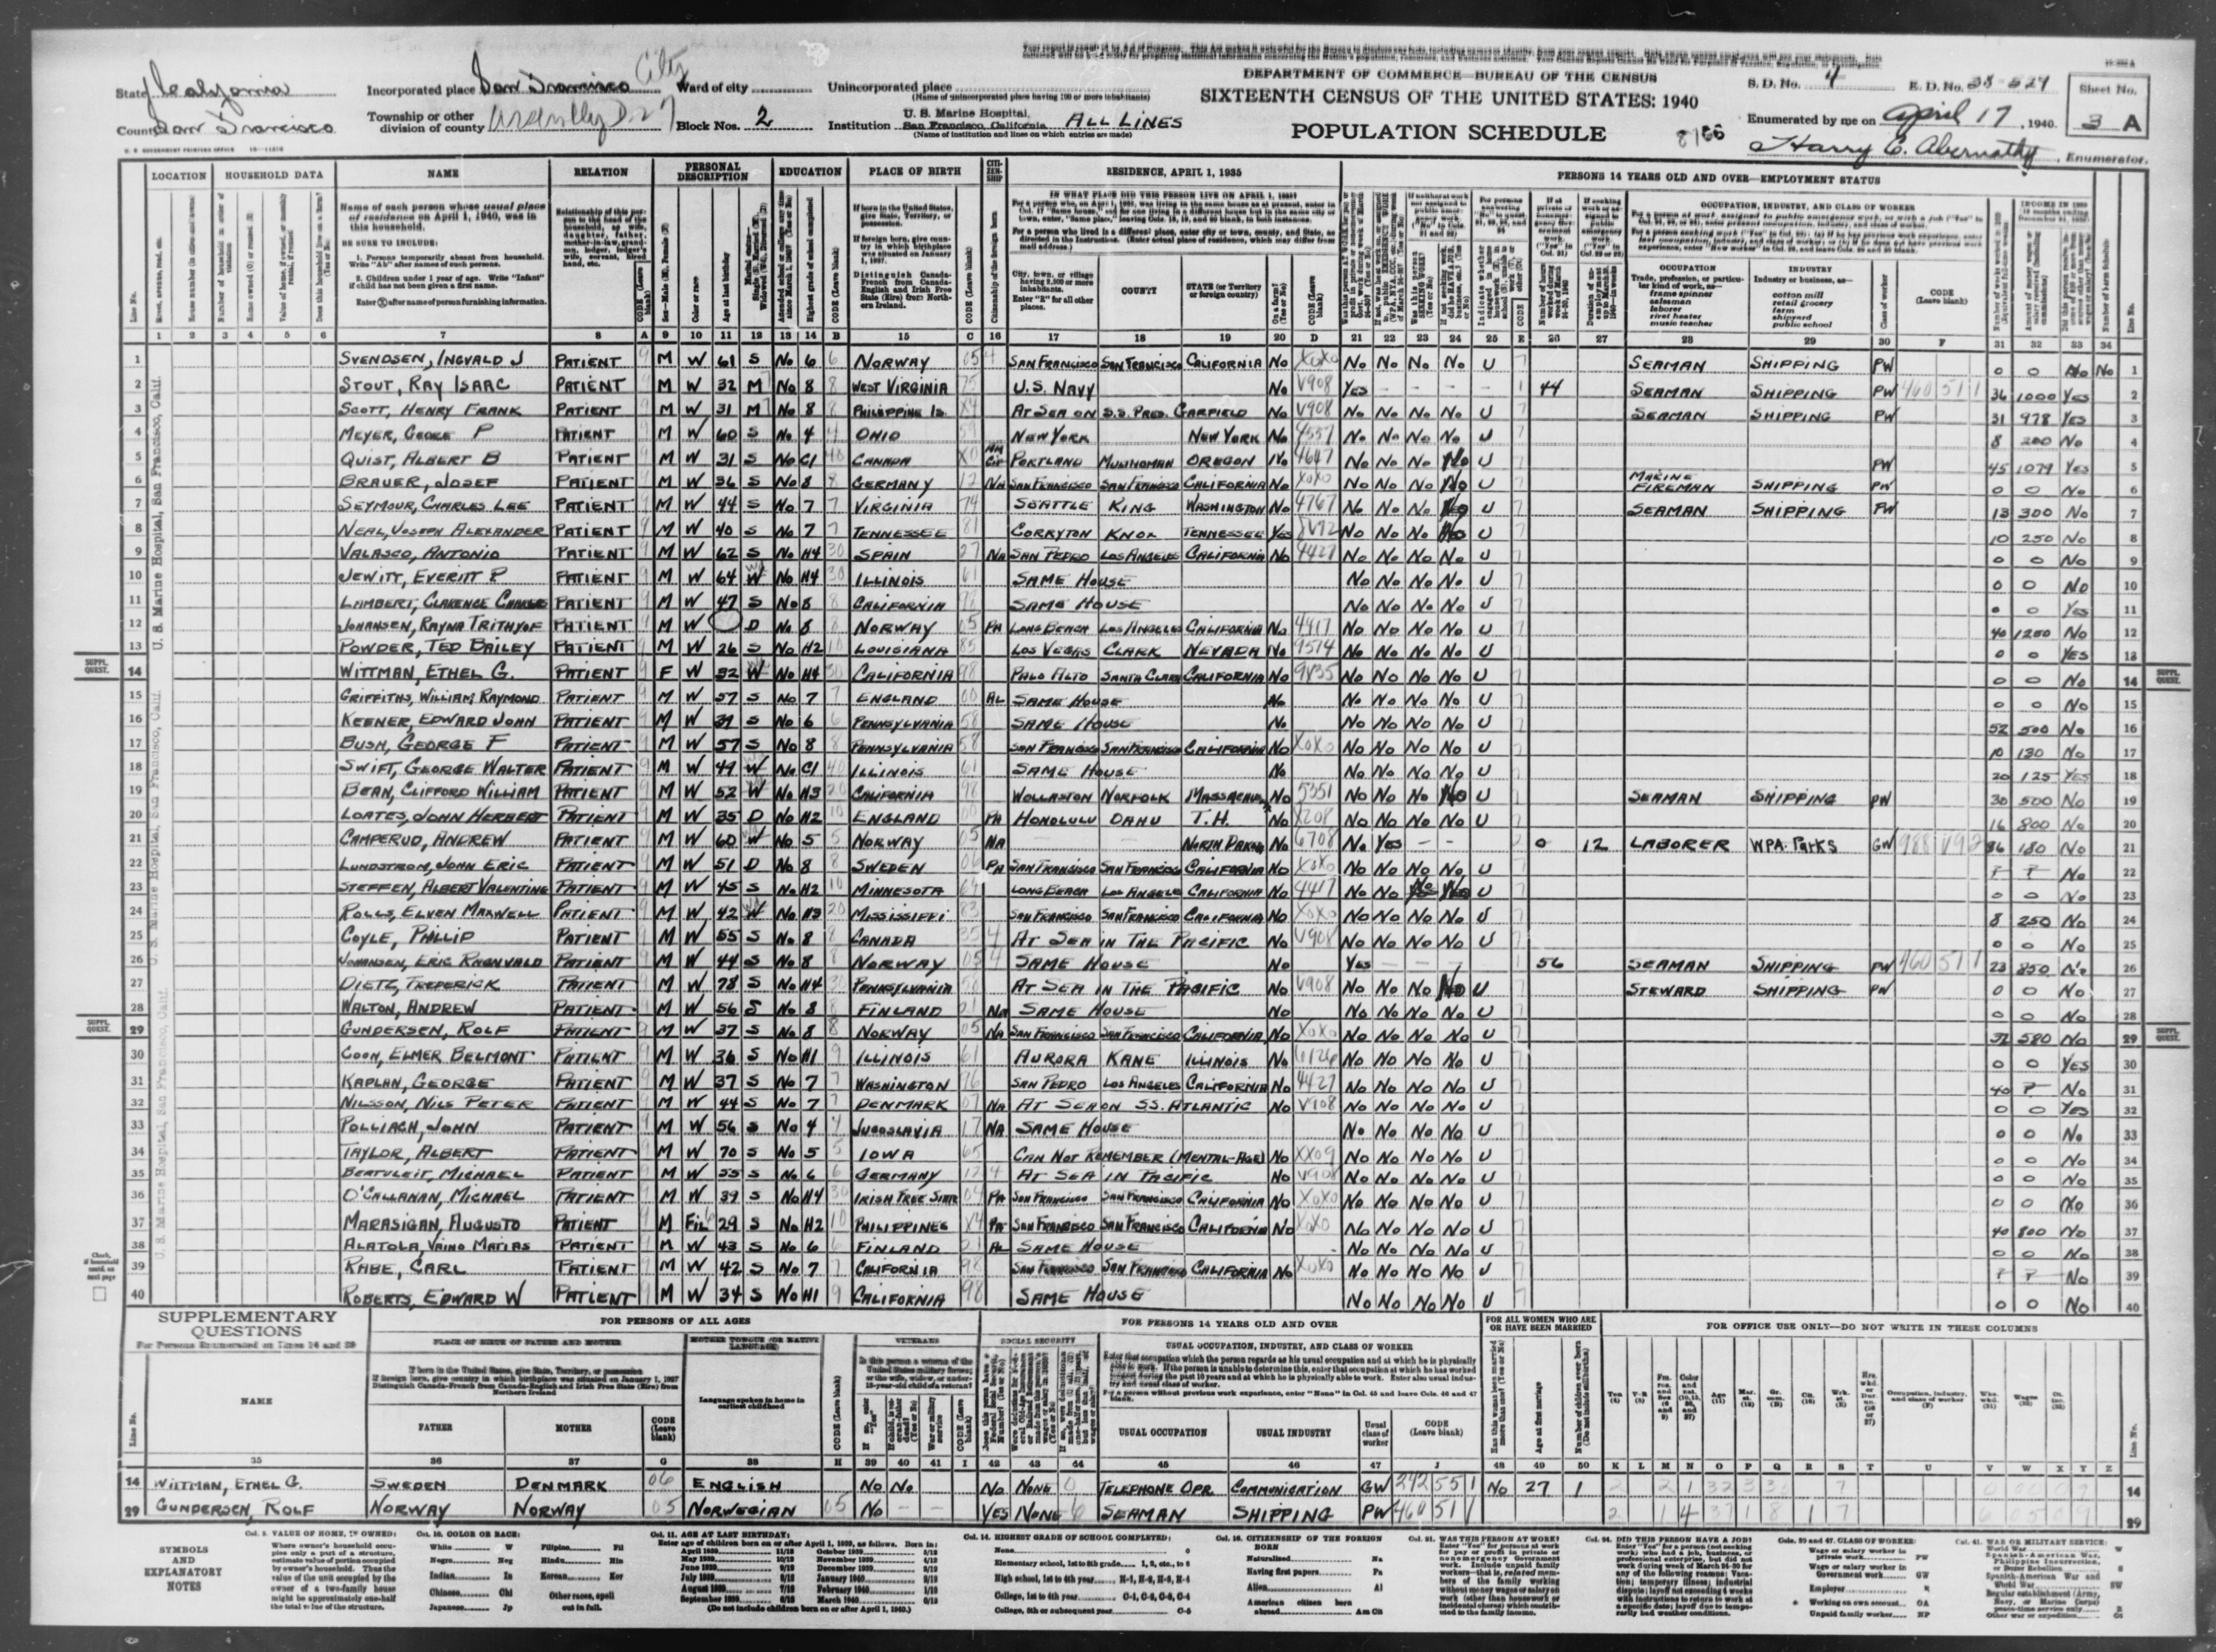 1940 Census, U.S. Marine Hospital, CA